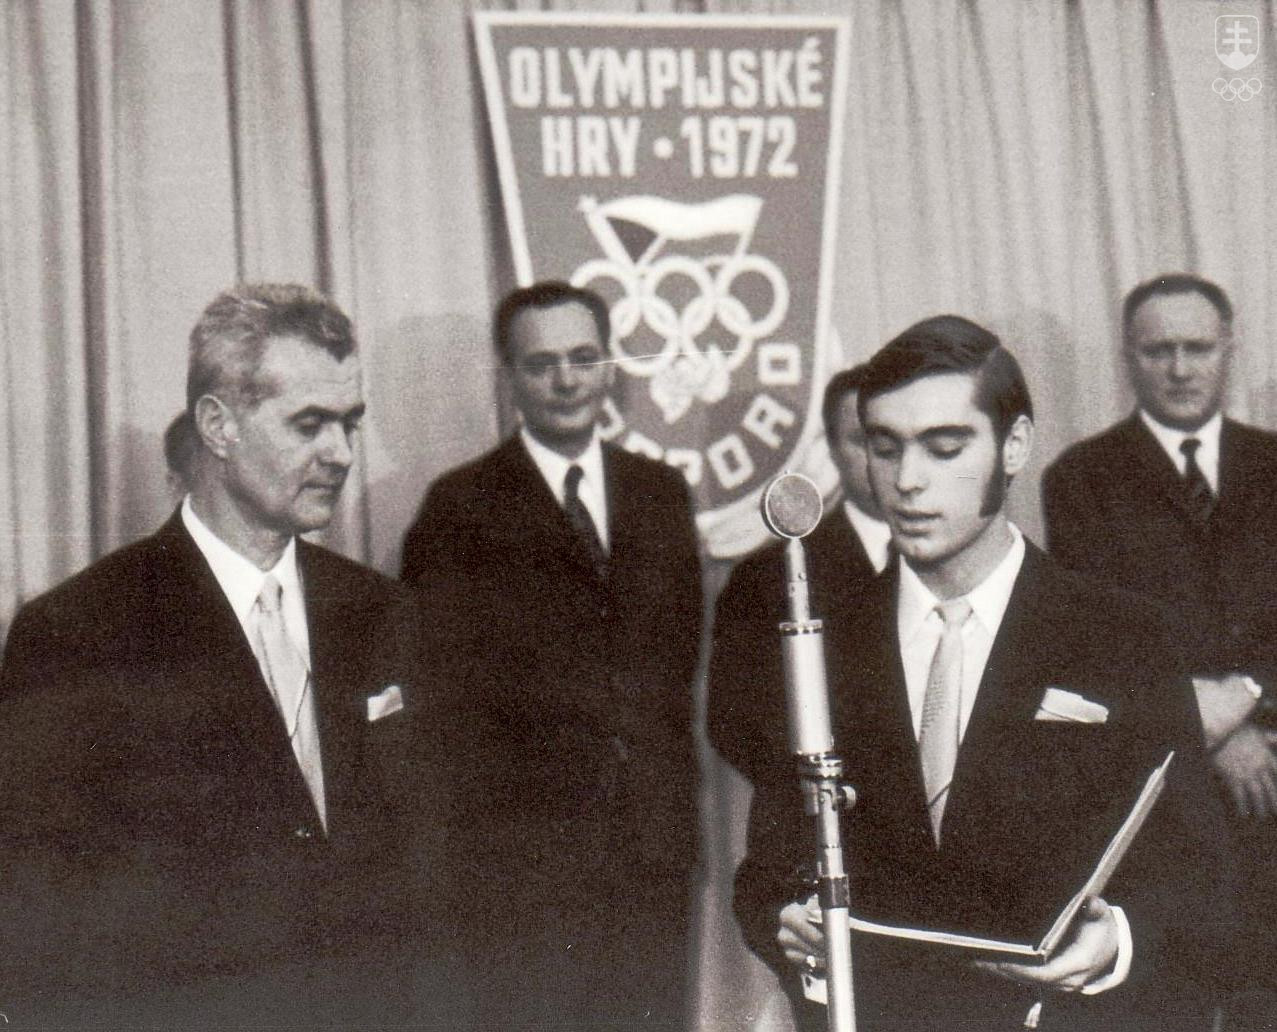 Vladimír Černušák ako vedúci československej výpravy na ZOH 1972 v Sappore v spoločnosti krasokorčuliara Ondreja Nepelu pri skladaní slávnostného sľubu.